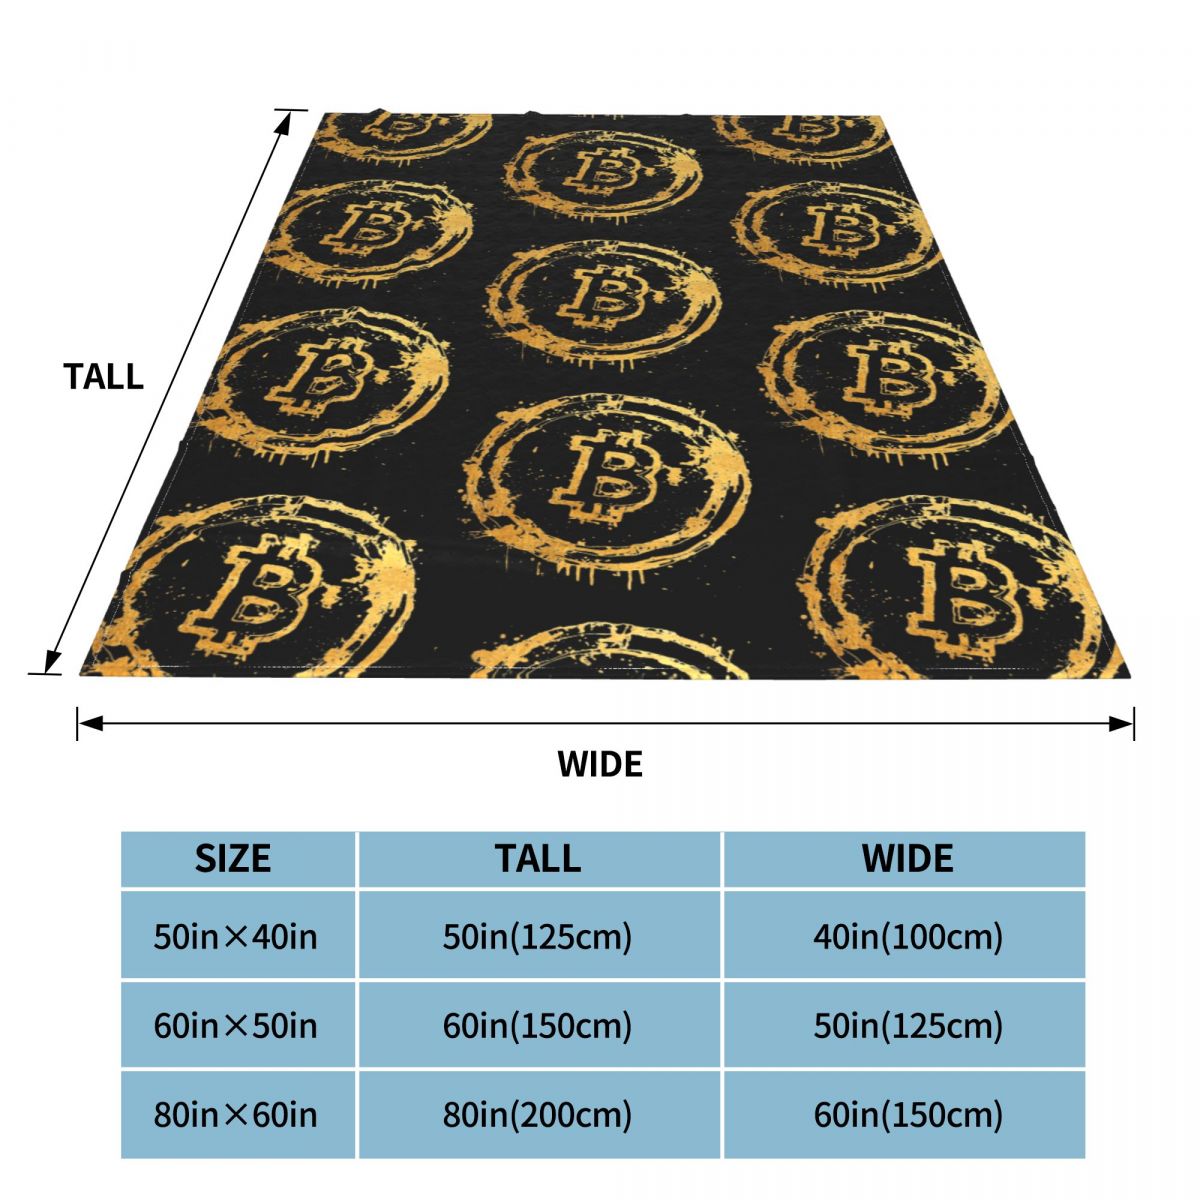 Blanket bitcoin blanket bitcoin-themed blanket